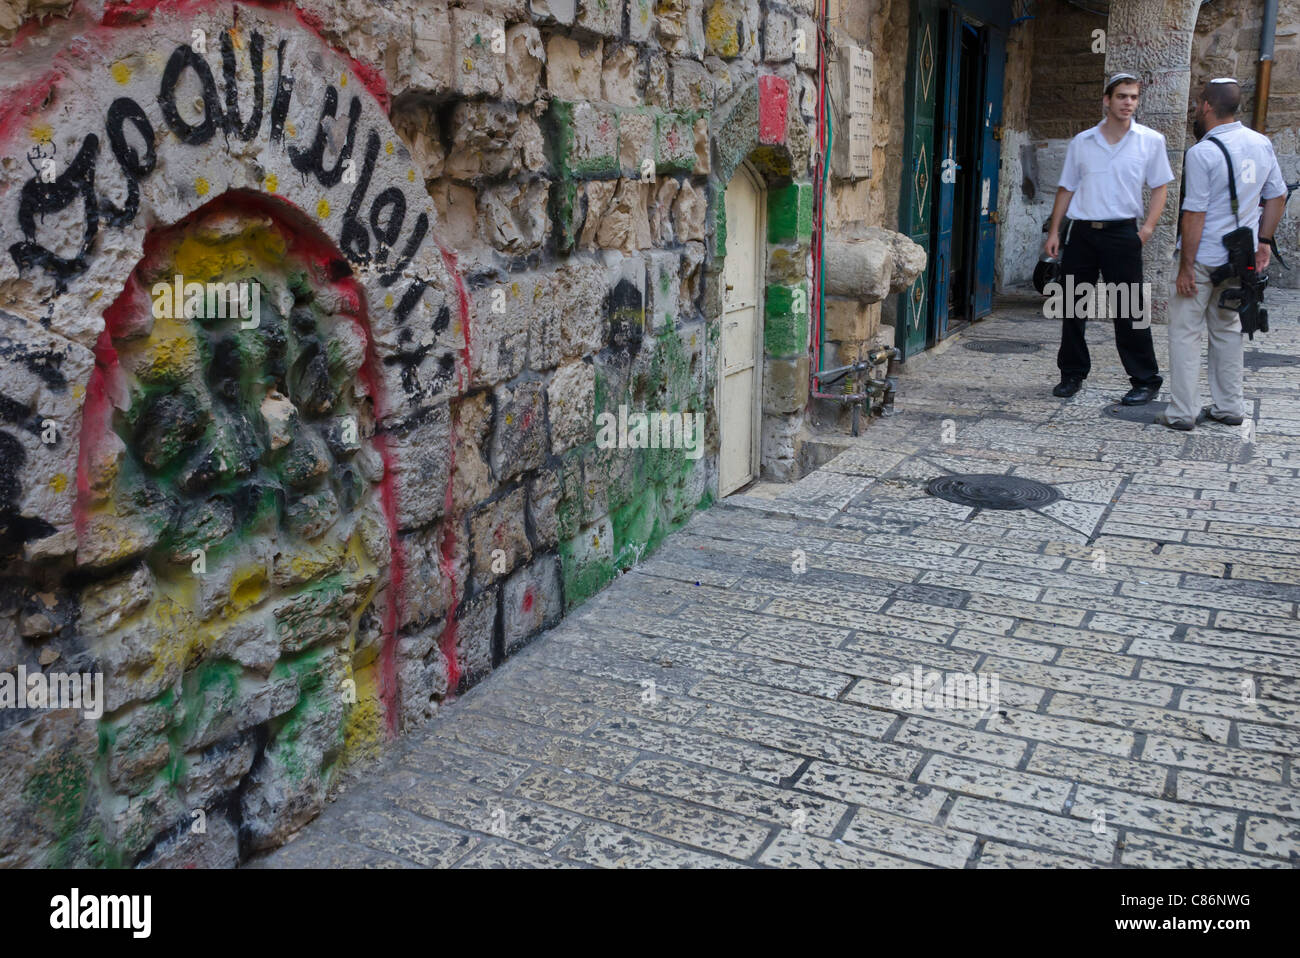 Deux jeunes hommes juifs avec arme dans les rues du quartier musulman de la vieille ville de Jérusalem.. Israël Banque D'Images